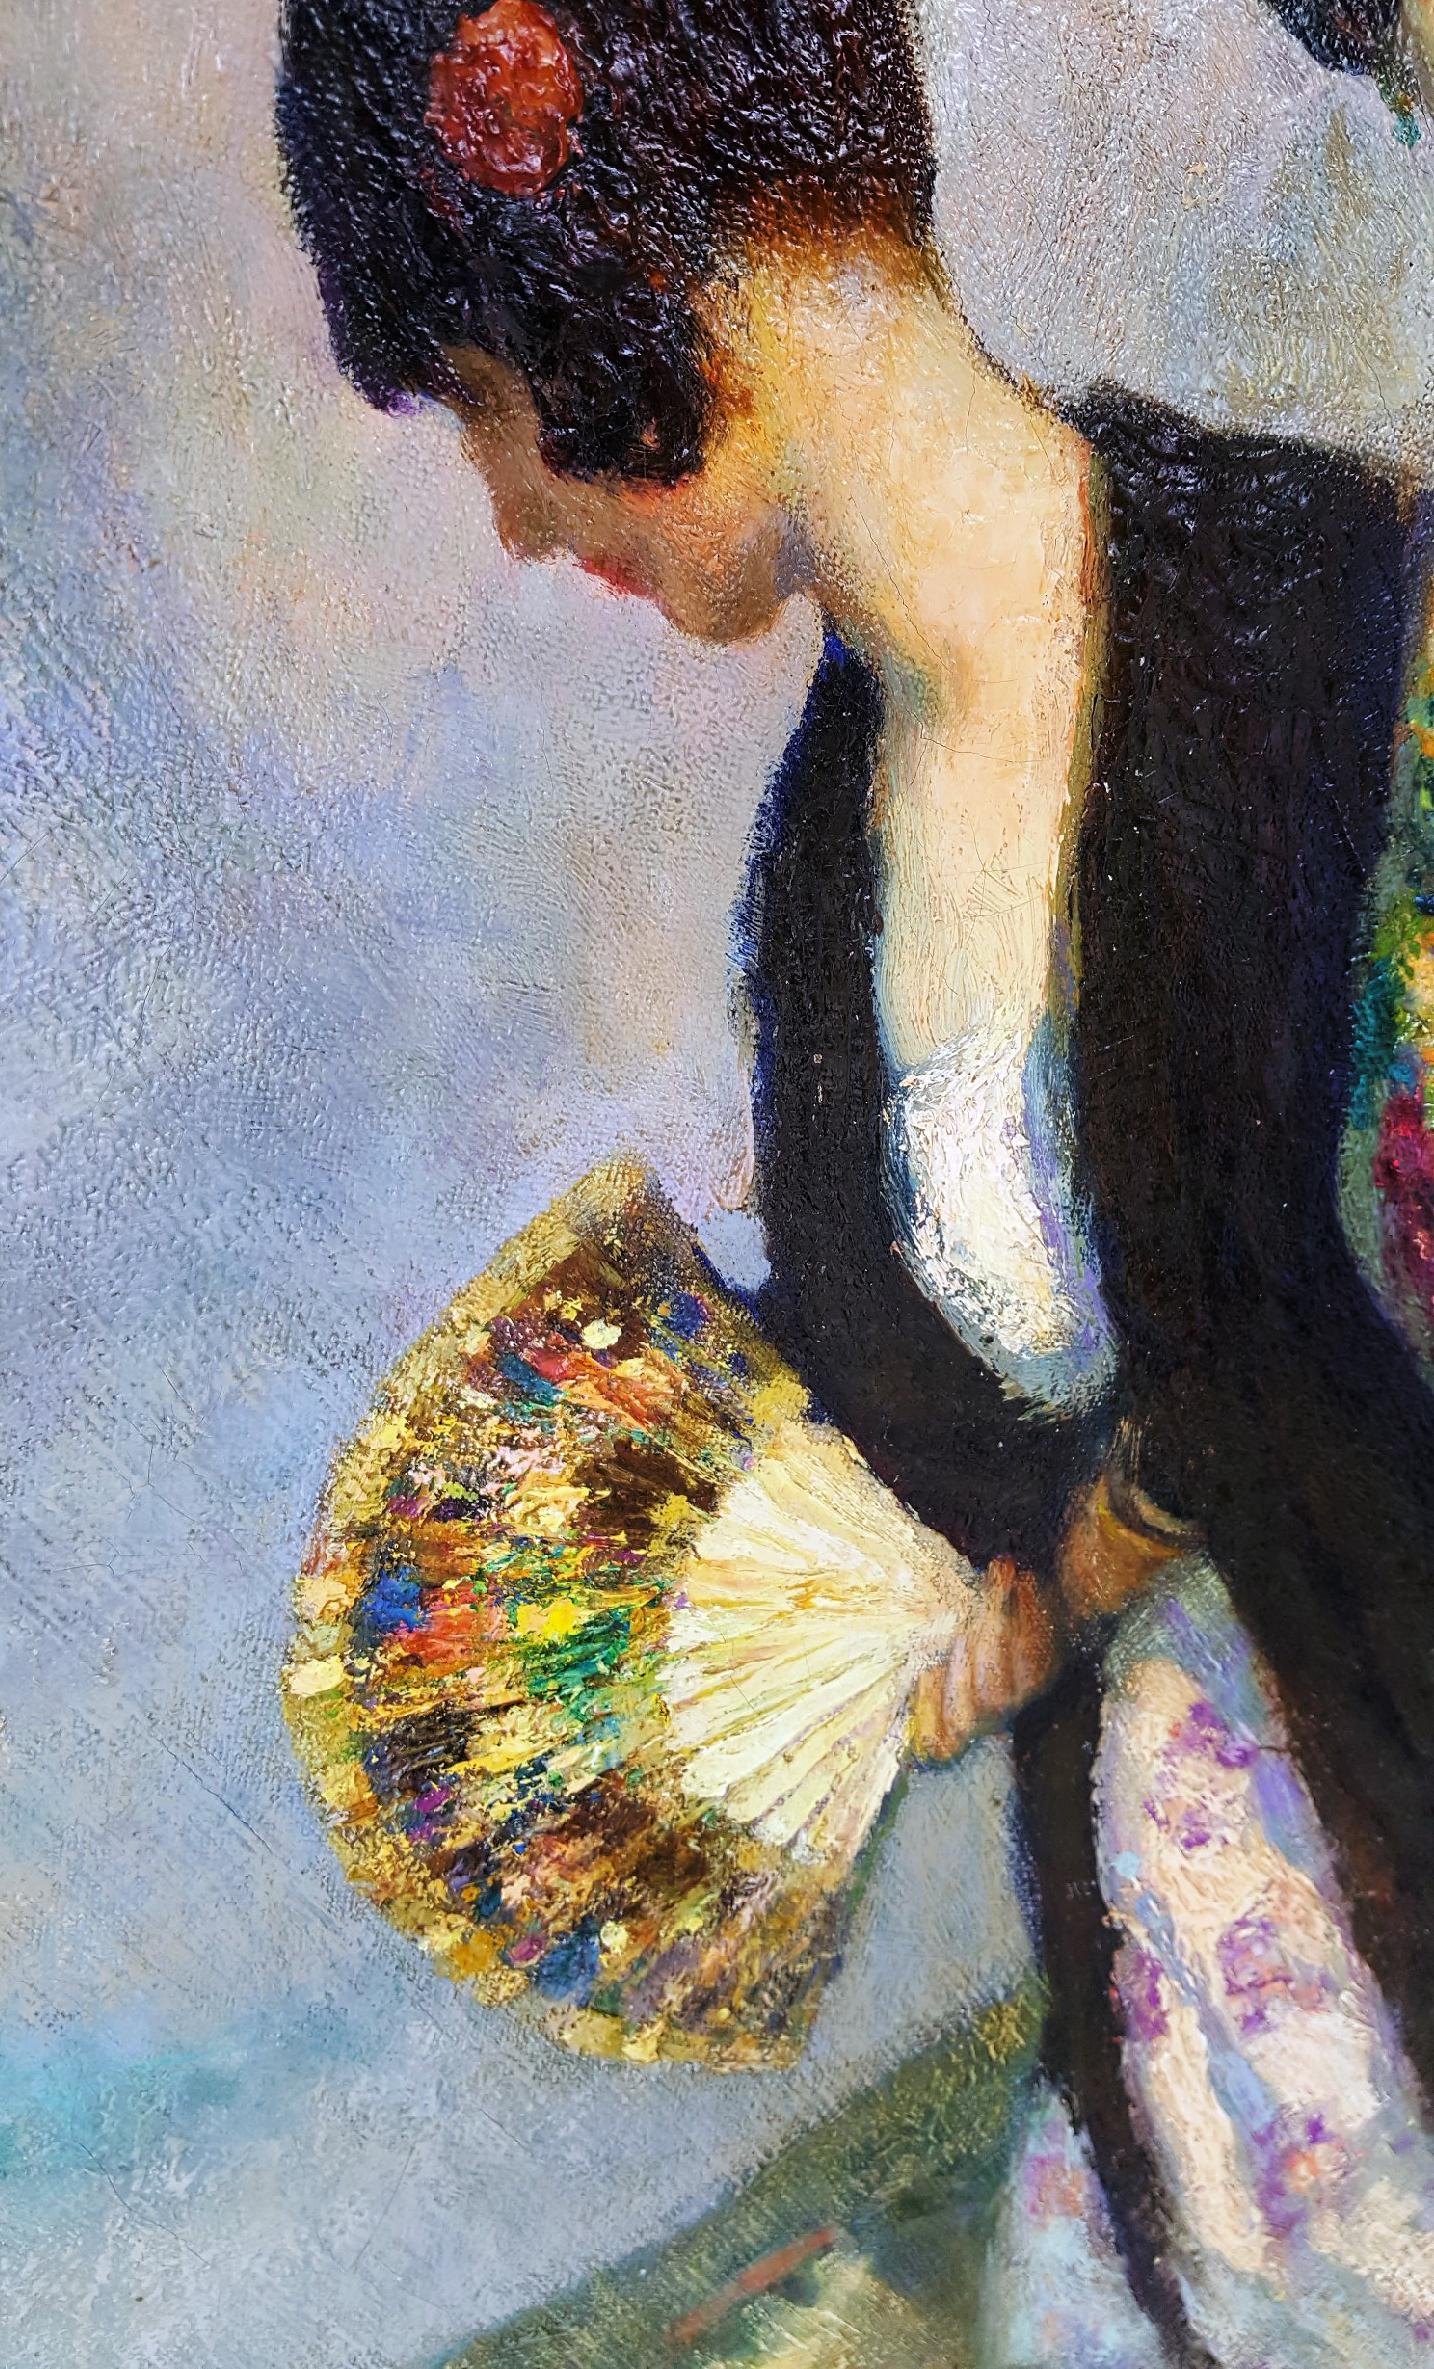 Souvenir d'Espagne - mantille, peineta, par Francis Luis Mora est une peinture de belles femmes espagnoles en tenue traditionnelle avec leur entourage. C'est une œuvre de qualité muséale. En fait,  elle était accrochée au Palais de la Légion